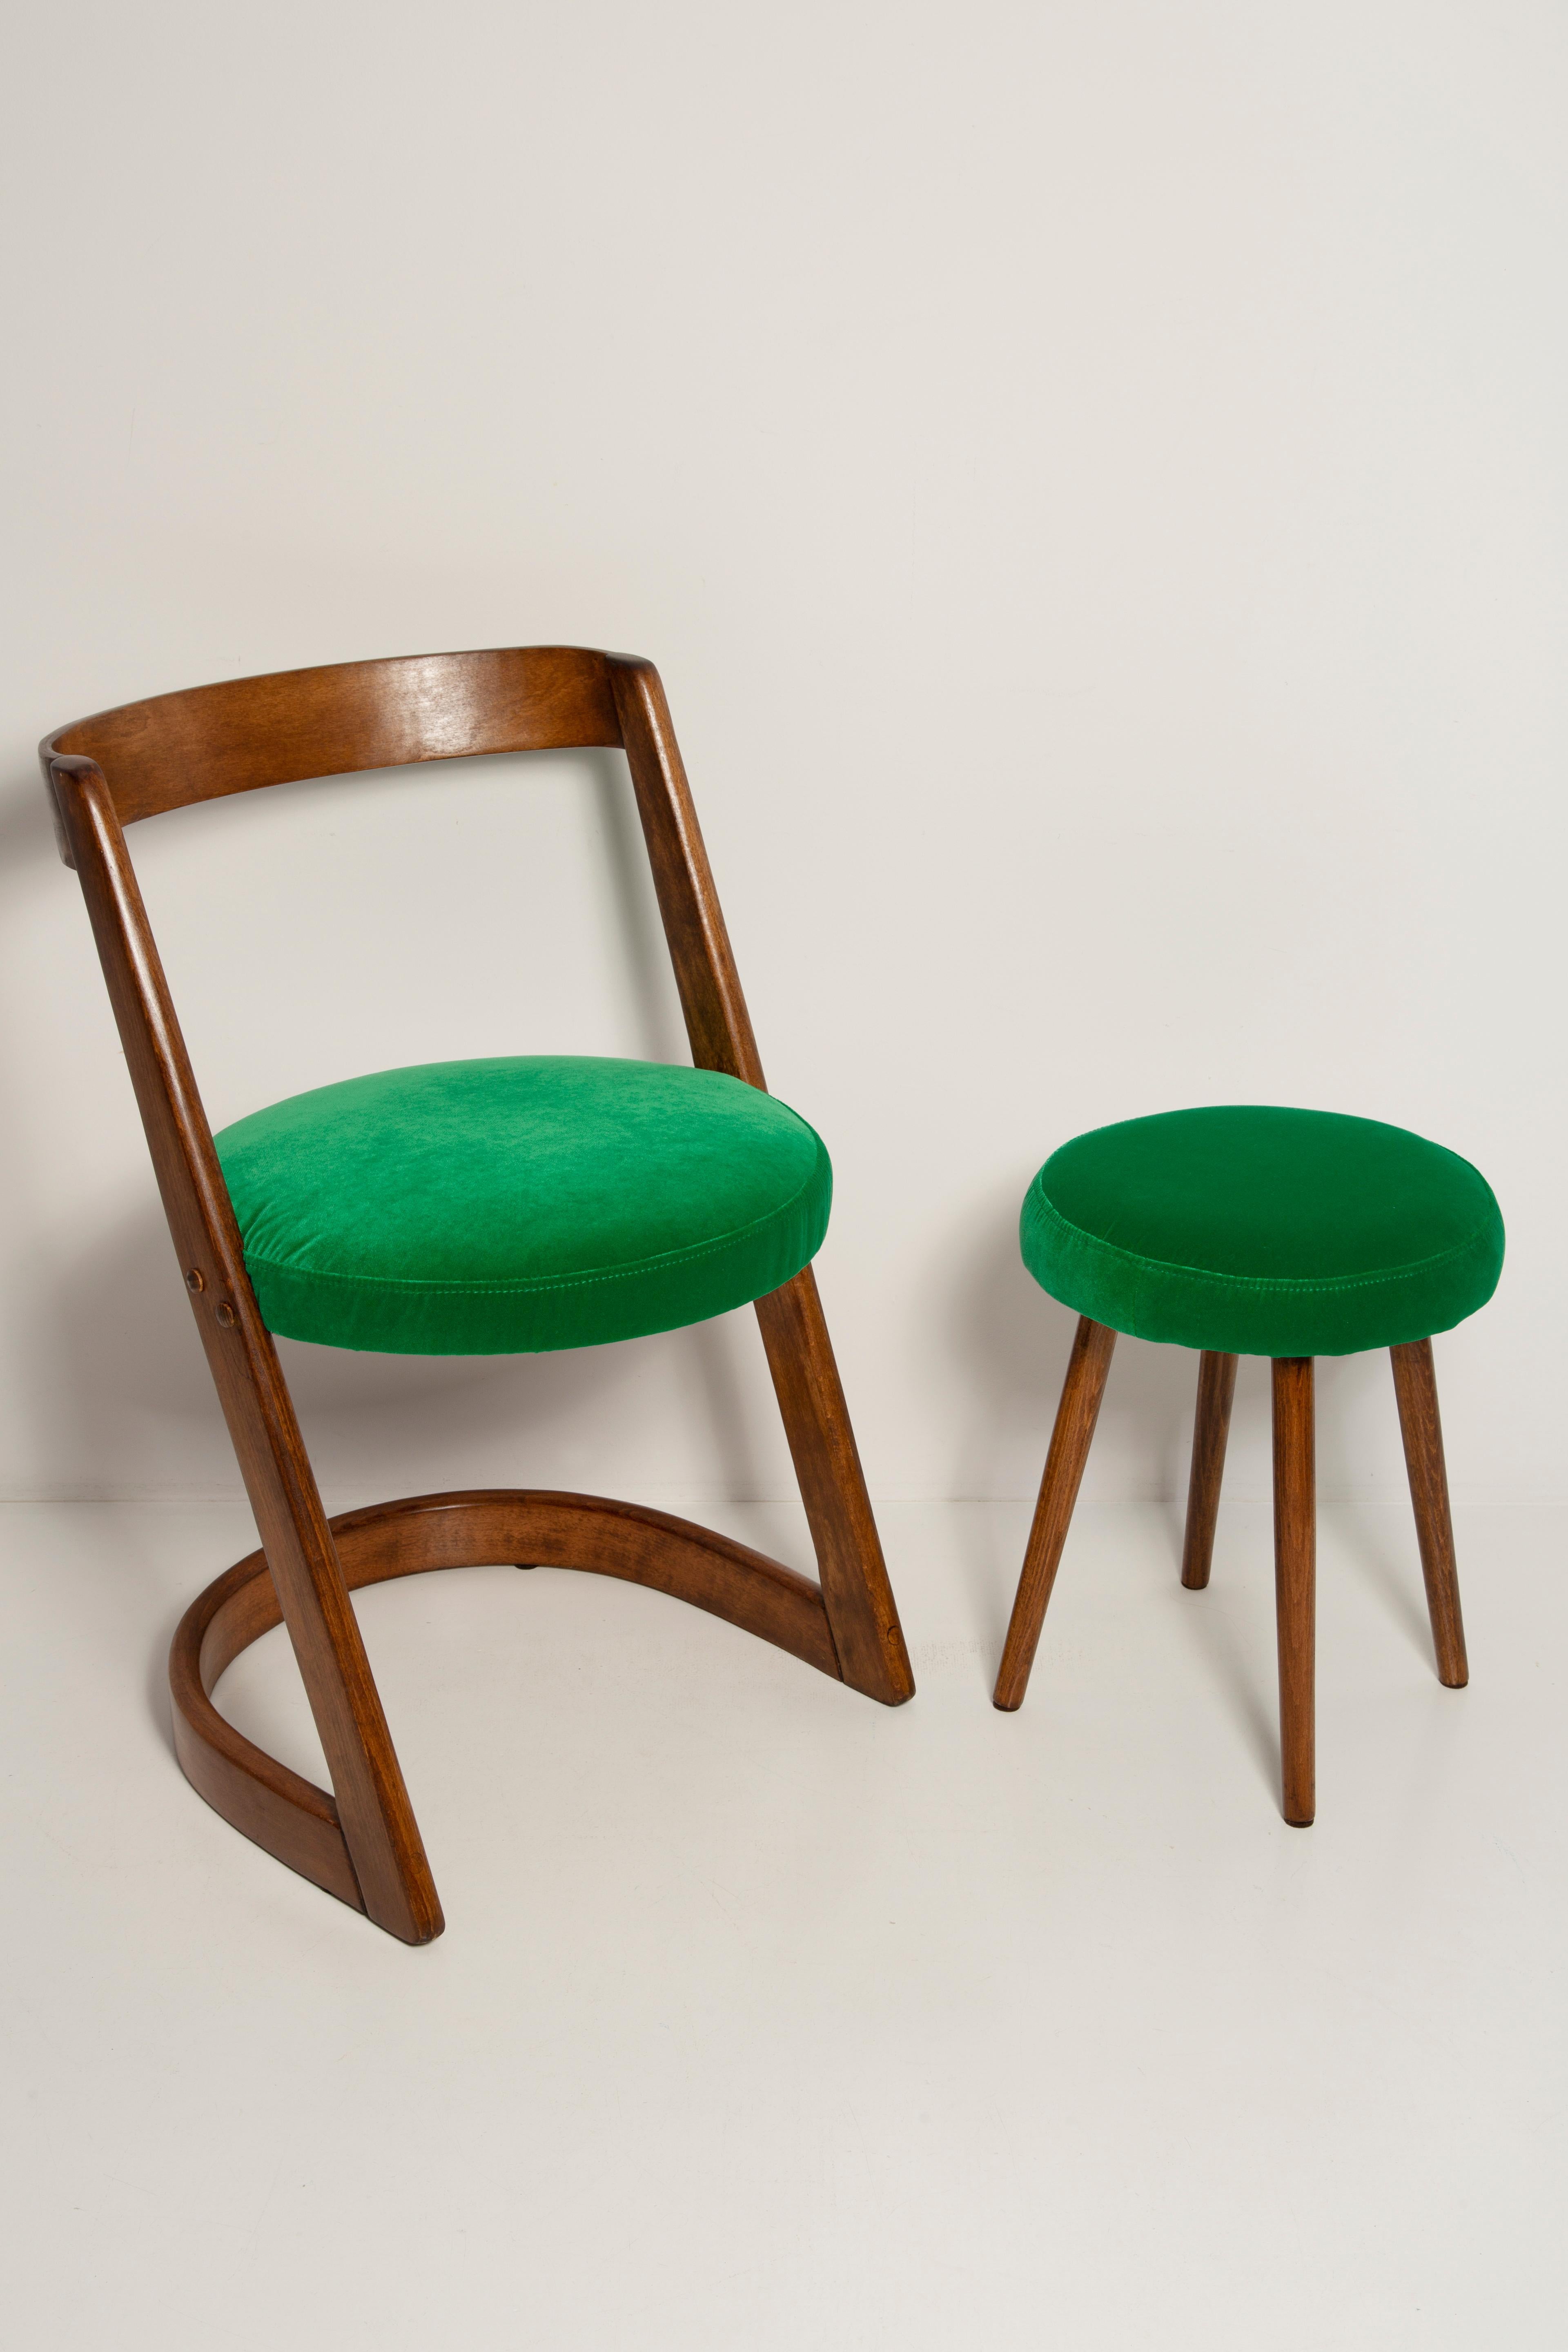 Halfa Chair, entworfen von Baumann in den 1970er Jahren. 
Im Katalog der Avantgarde-Sammlung.
Hergestellt aus 5 Stücken Doubs-Buche.

Hergestellt aus Buchenholz. Der Stuhl wurde komplett neu gepolstert, die Holzarbeiten wurden aufgefrischt. Der Sitz